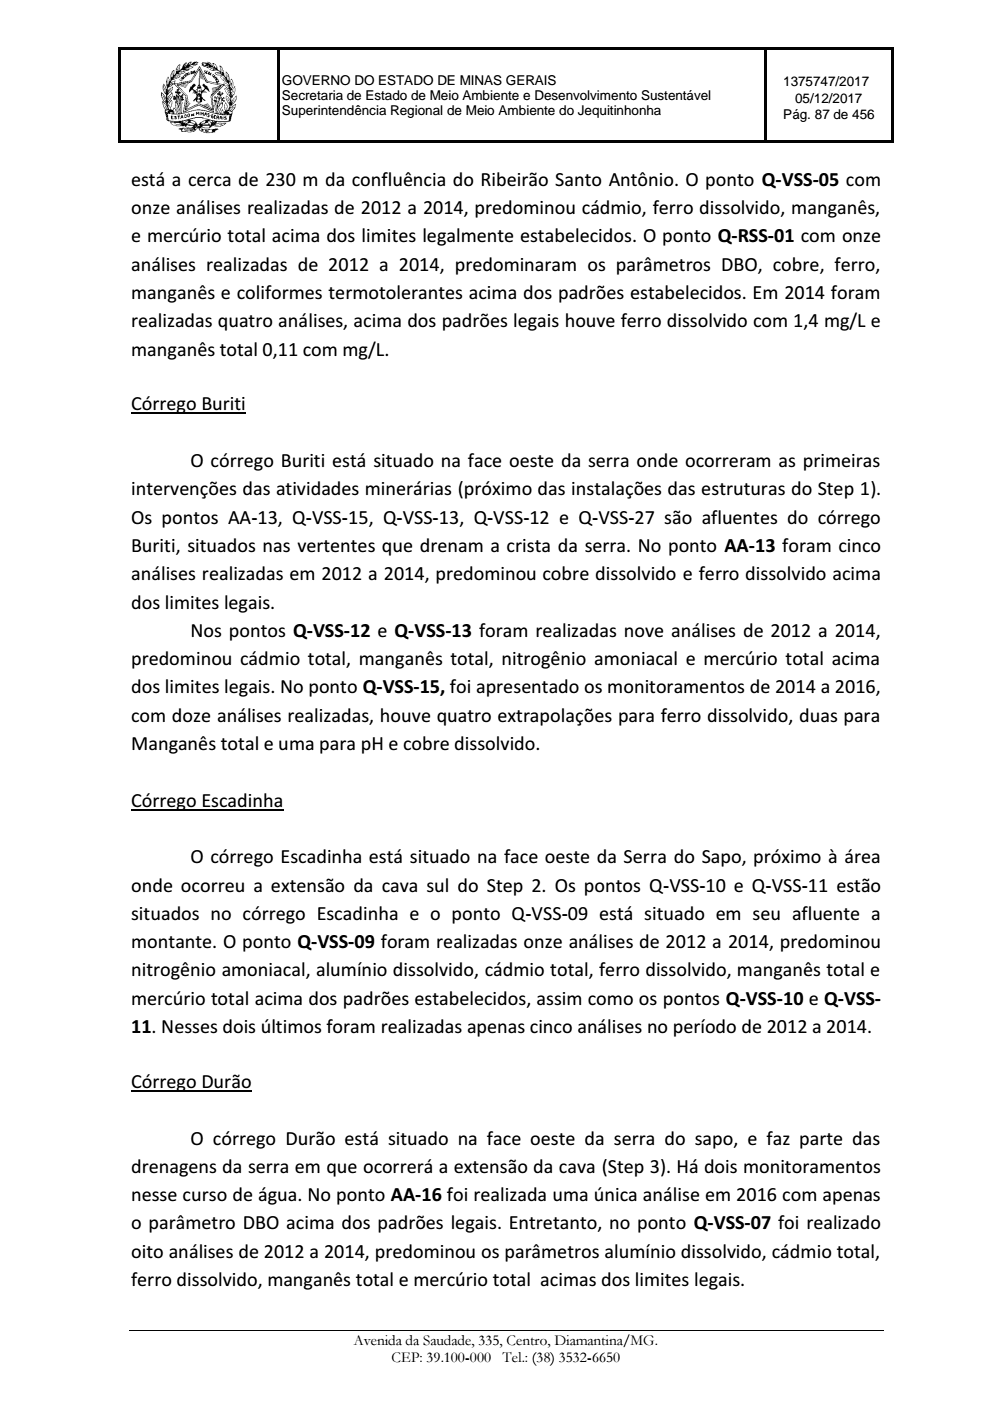 Page 87 from Parecer único da Secretaria de estado de Meio Ambiente e Desenvolvimento Sustentável (SEMAD)